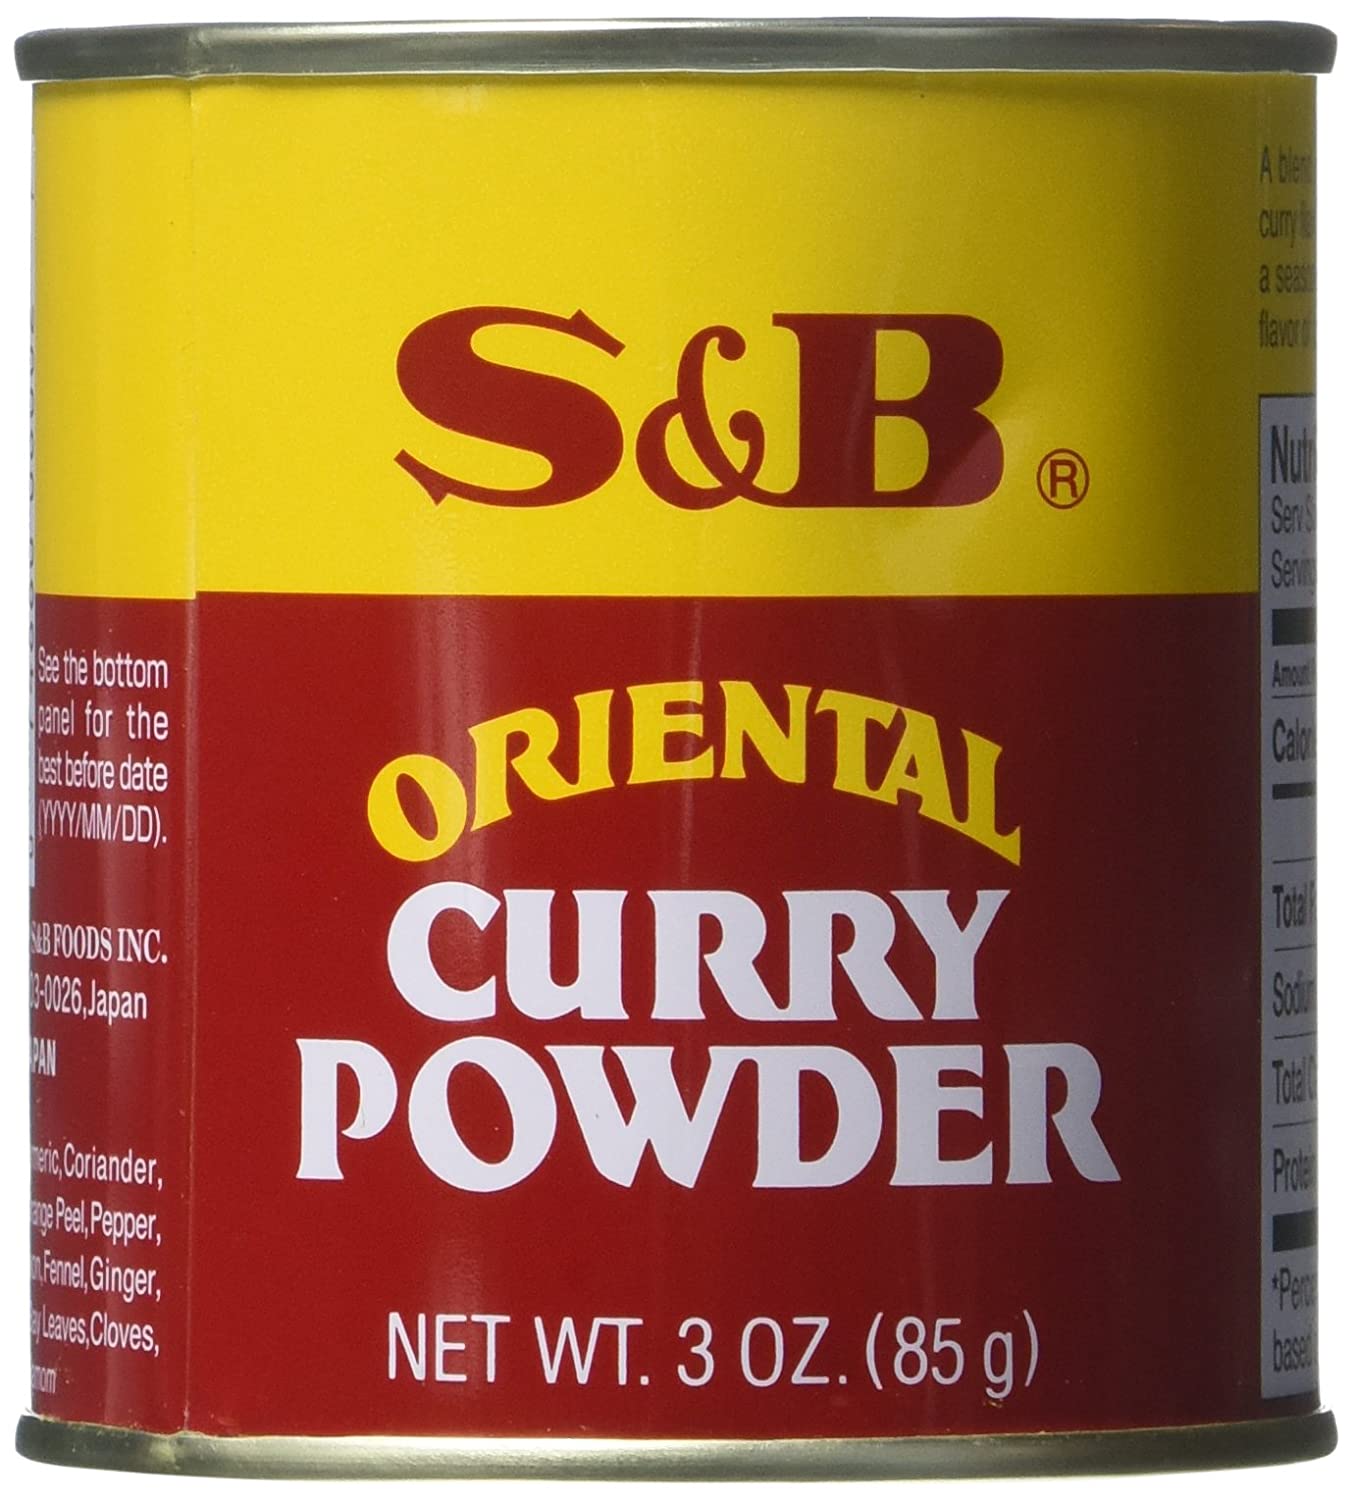 El mejor polvo de curry japonés con cobertura de takoyaki: S&B Curry Powder